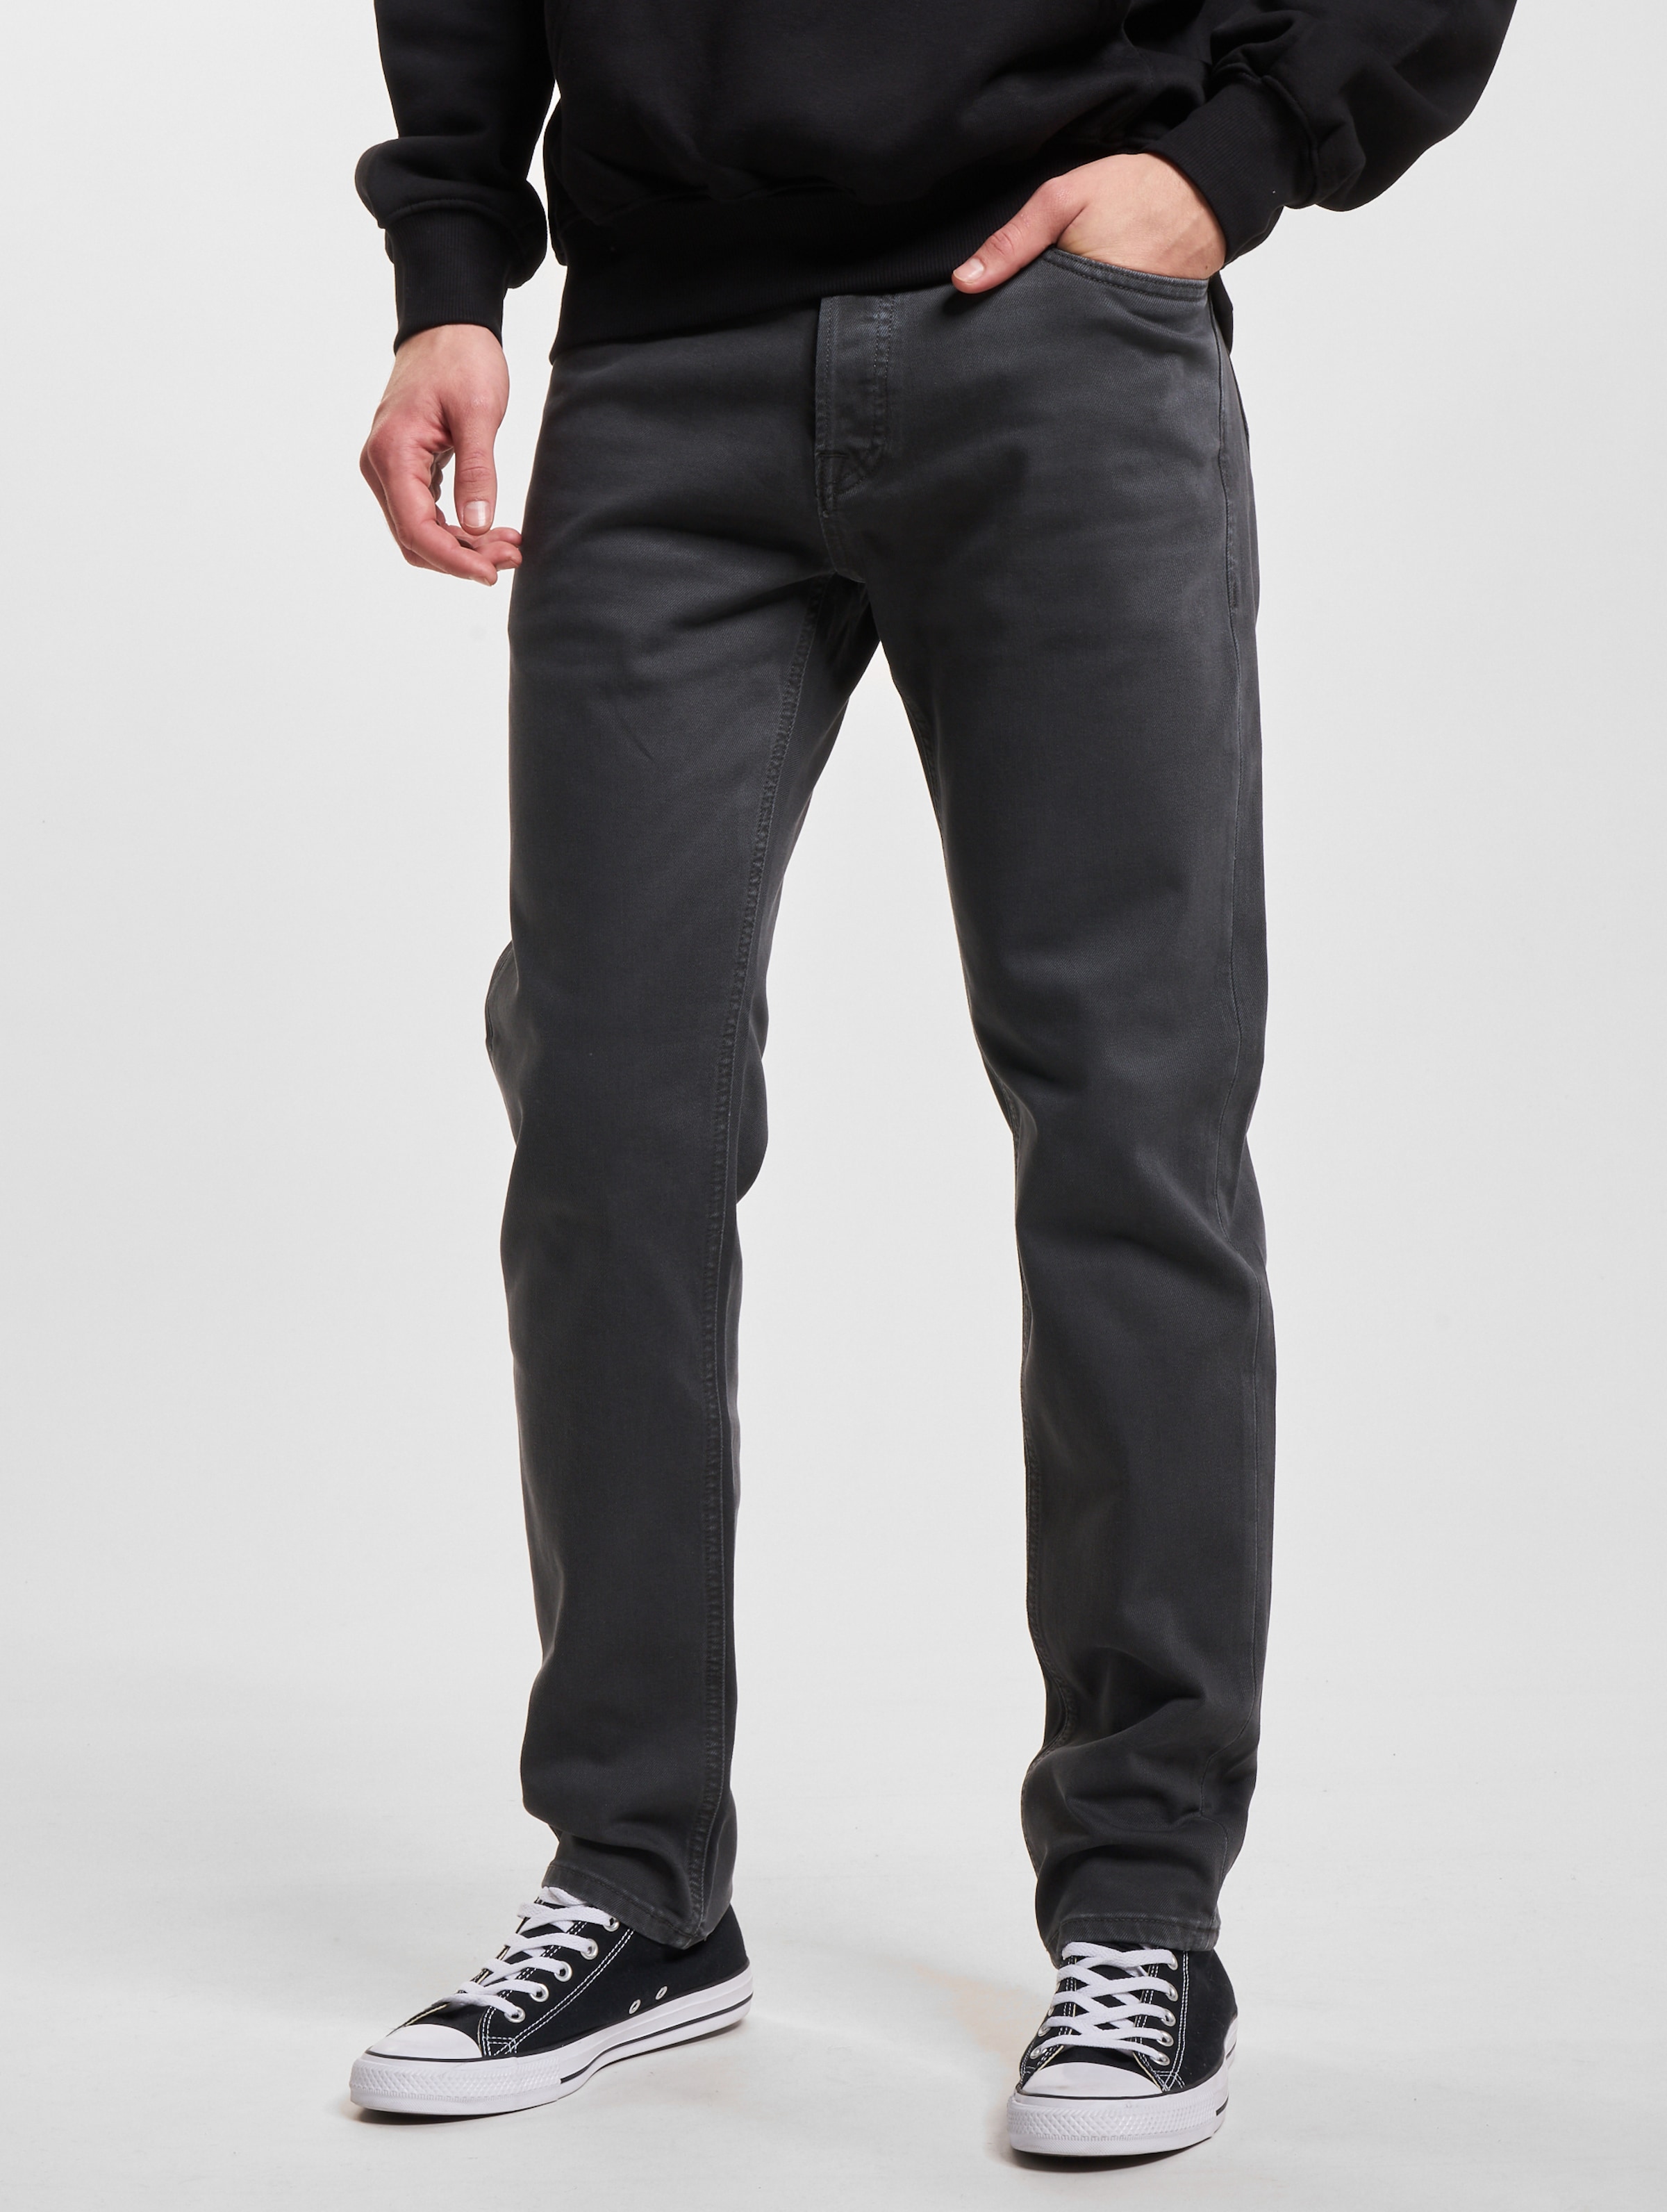 Jack & Jones Mike Original Straight Fit Jeans Mannen op kleur grijs, Maat 3234